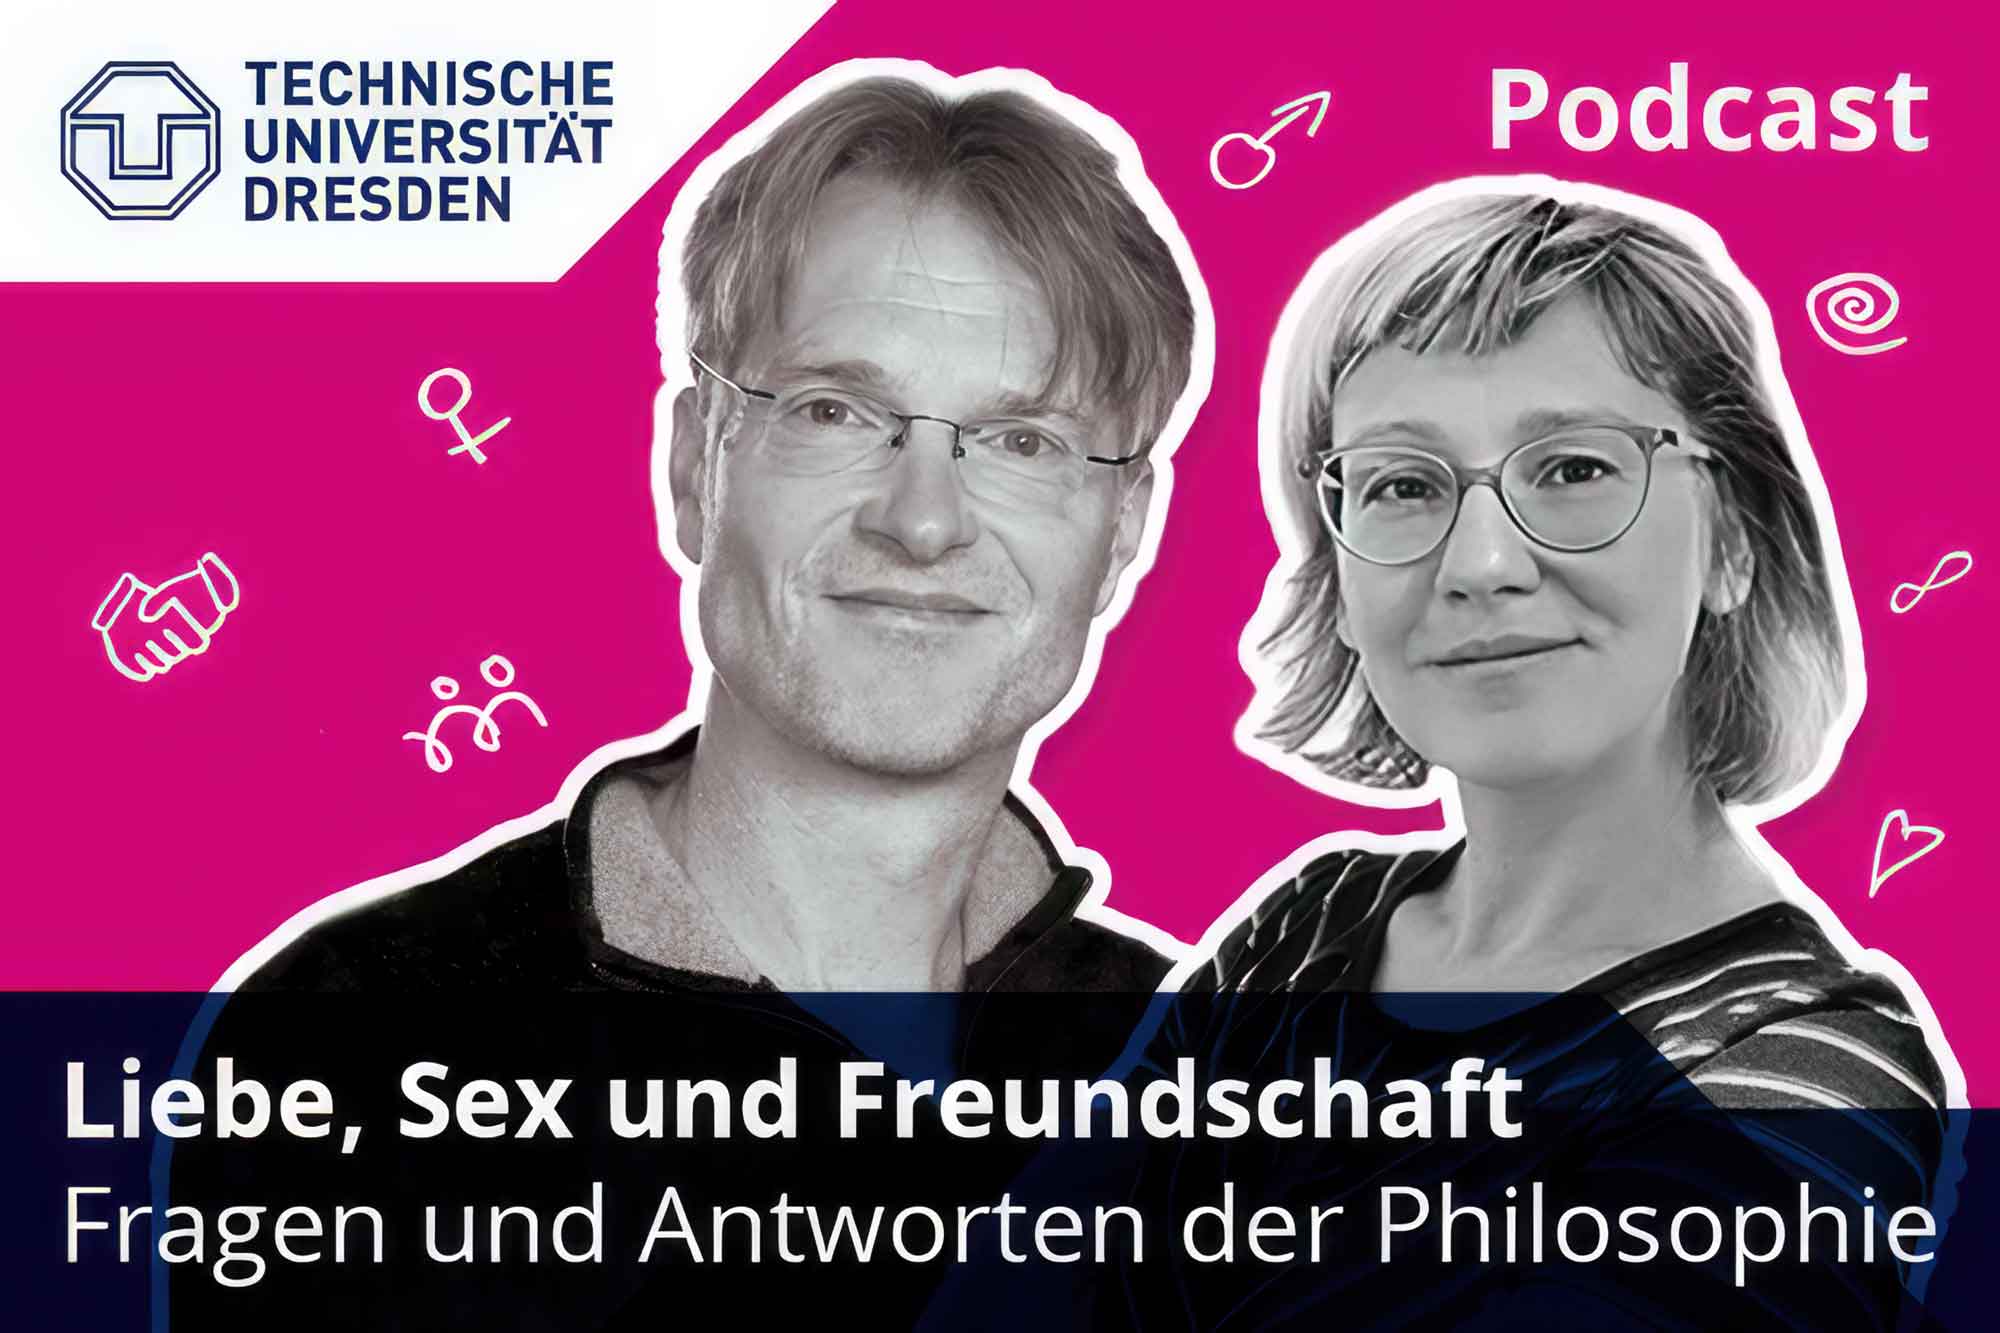 Philosophieren über Liebe, Sex und Freundschaft: »Professor des Jahres« Markus Tiedemann veröffentlicht Podcast